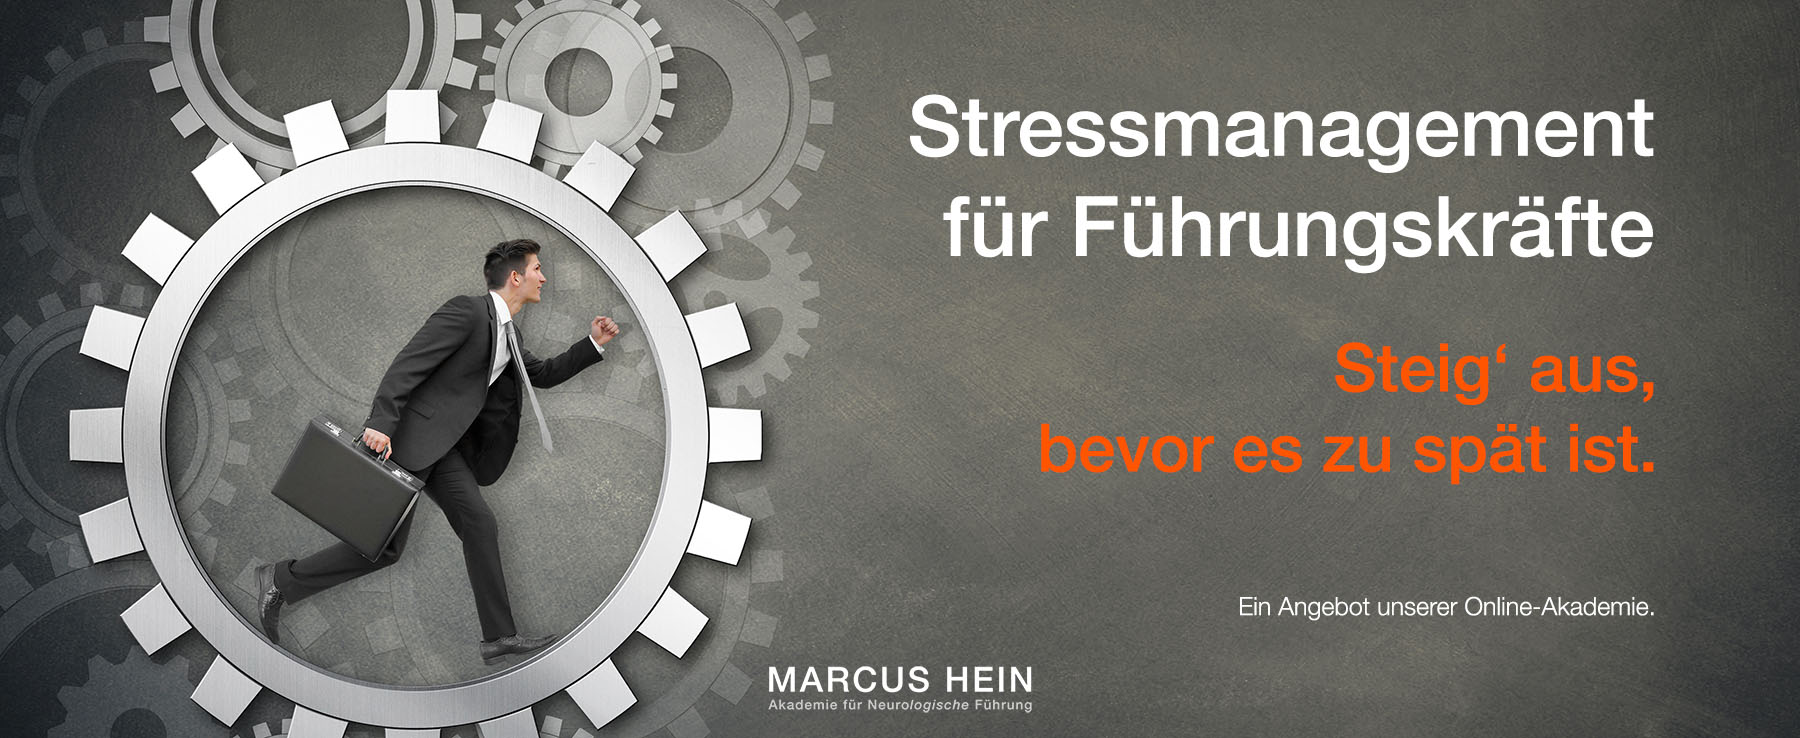 MARCUS HEIN - Online-Akademie - Stressmanagement für Führungskräfte